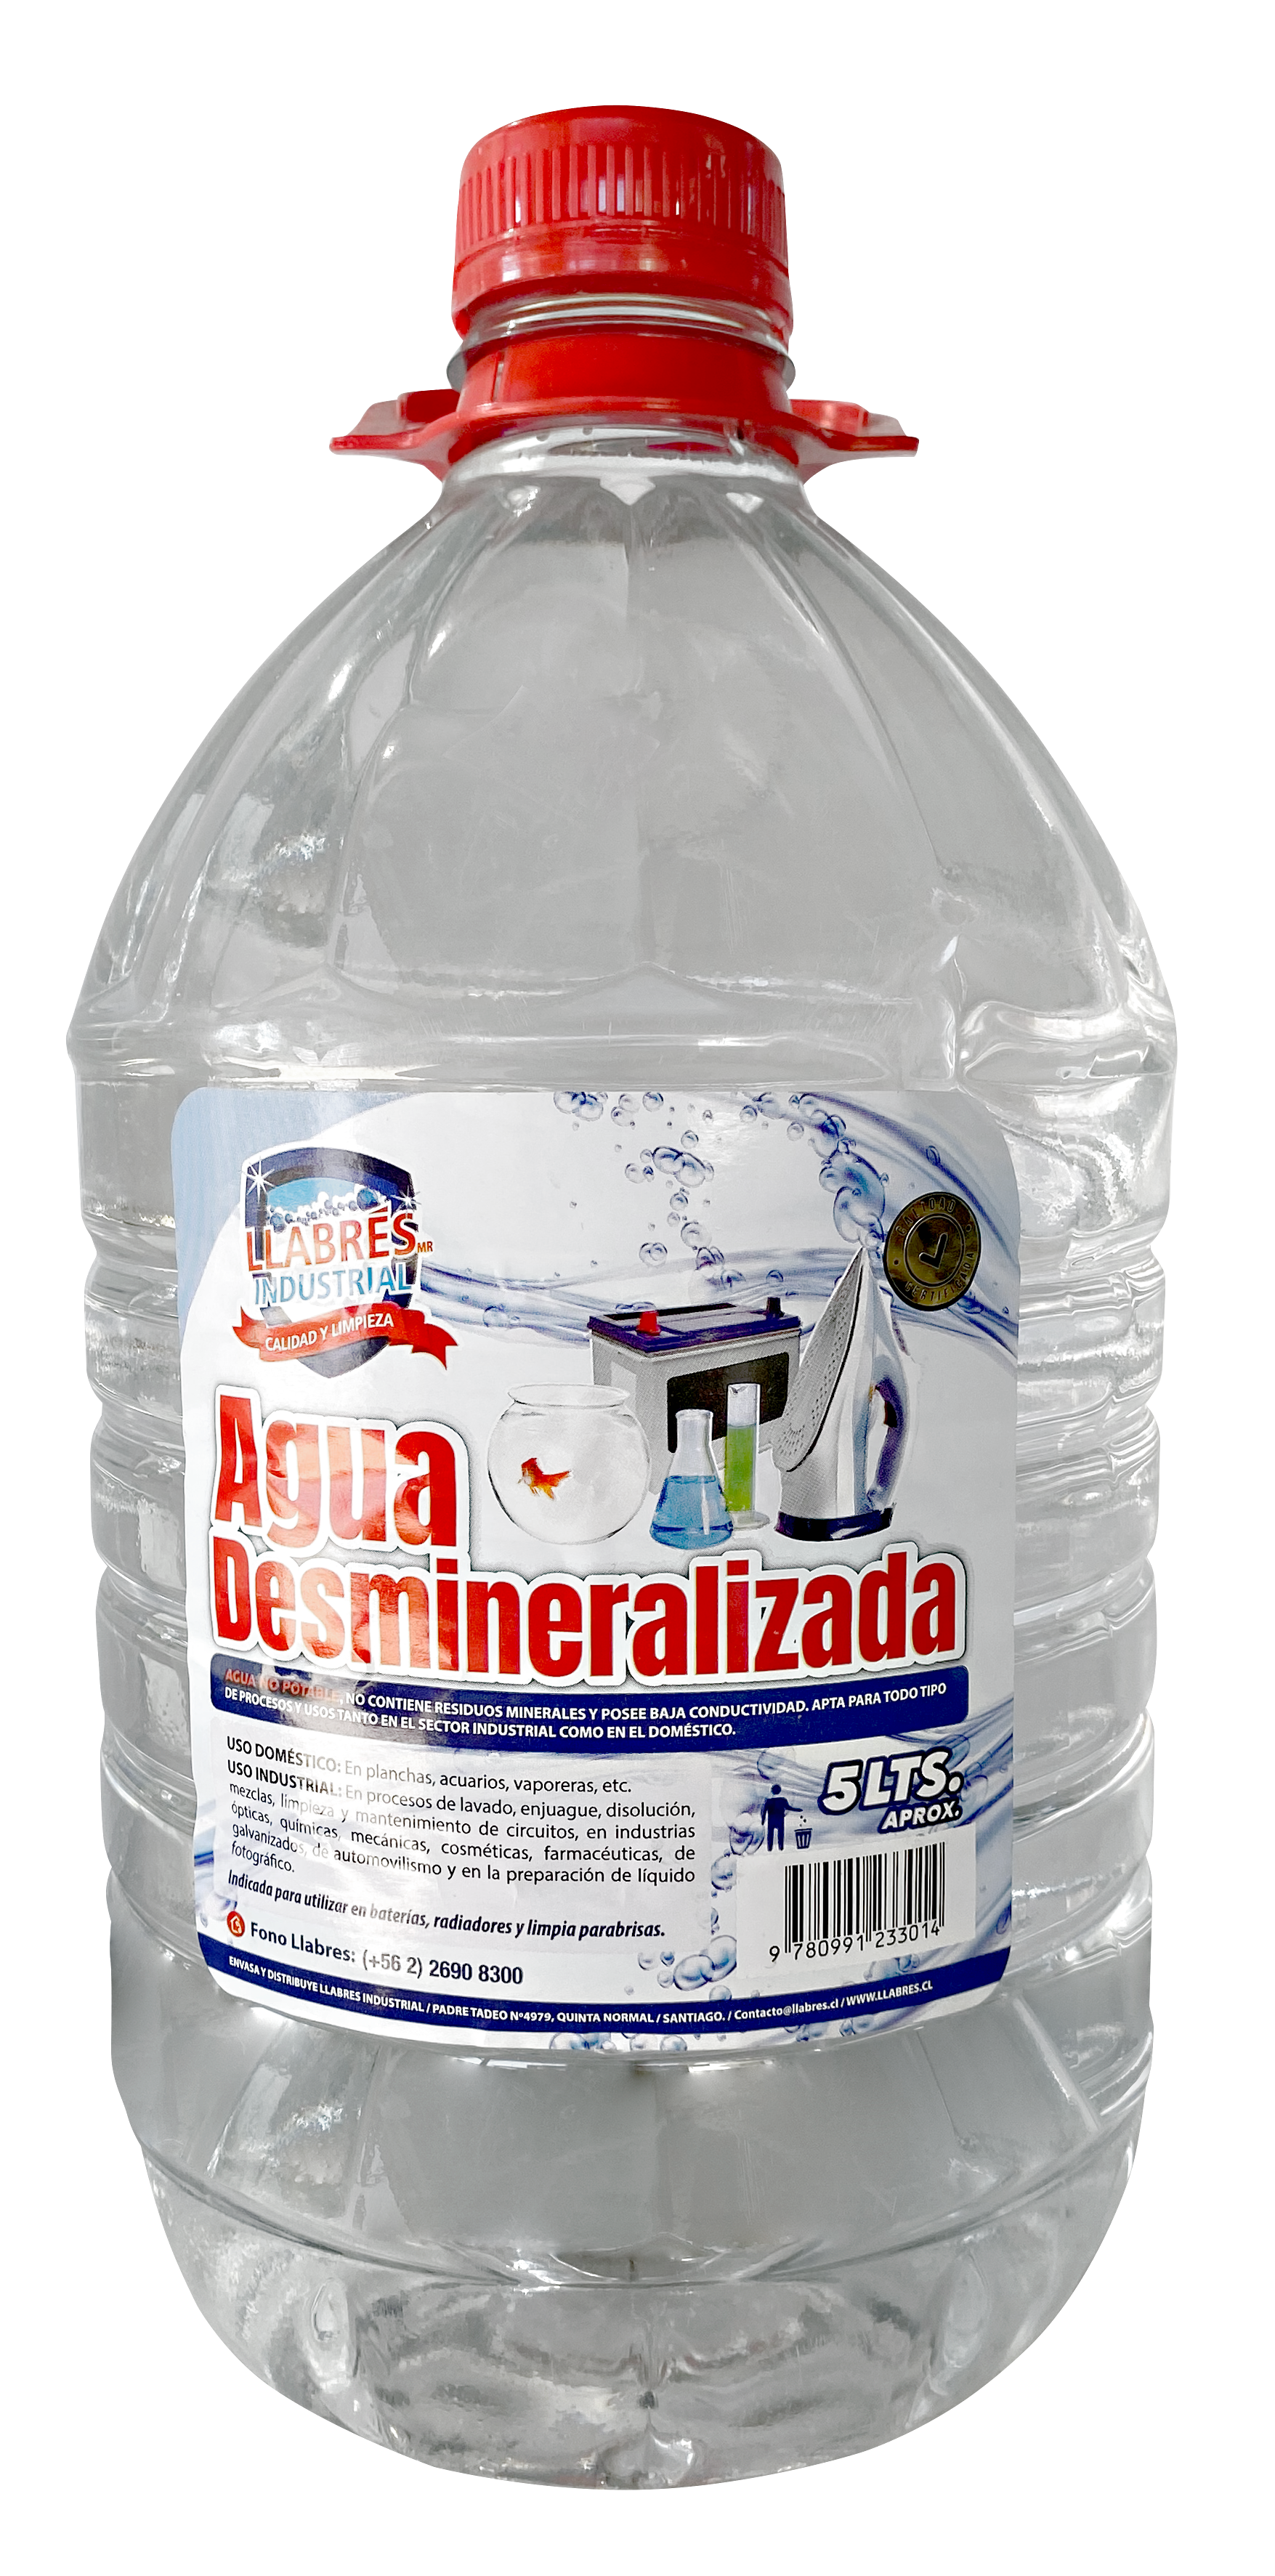 Agua Destilada Desmineralizada X 5 Litros - Parat